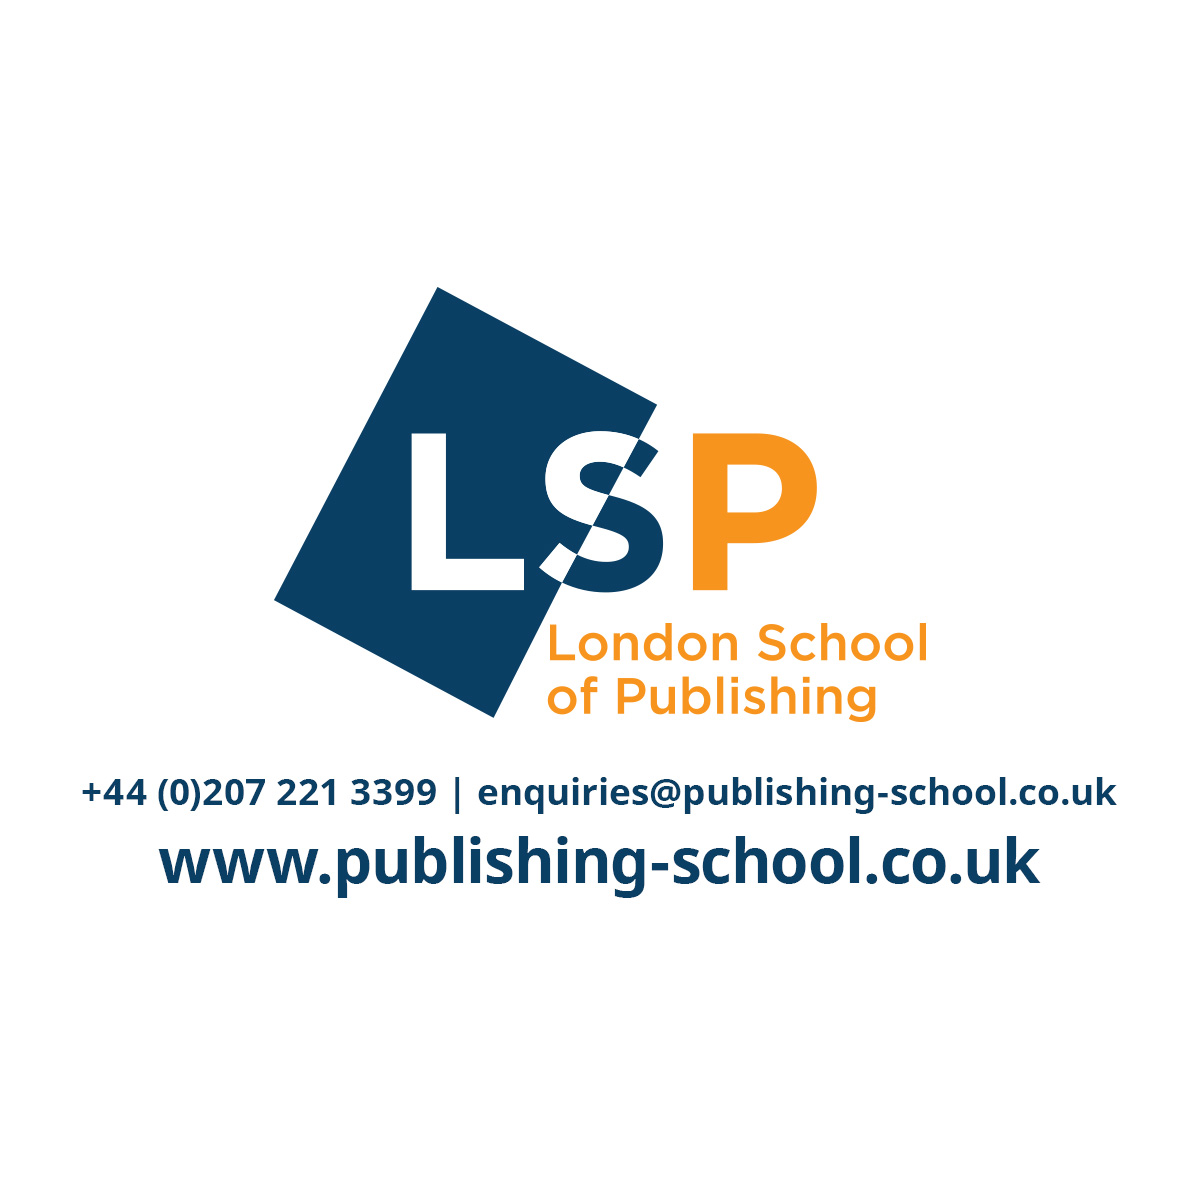 (c) Publishing-school.co.uk